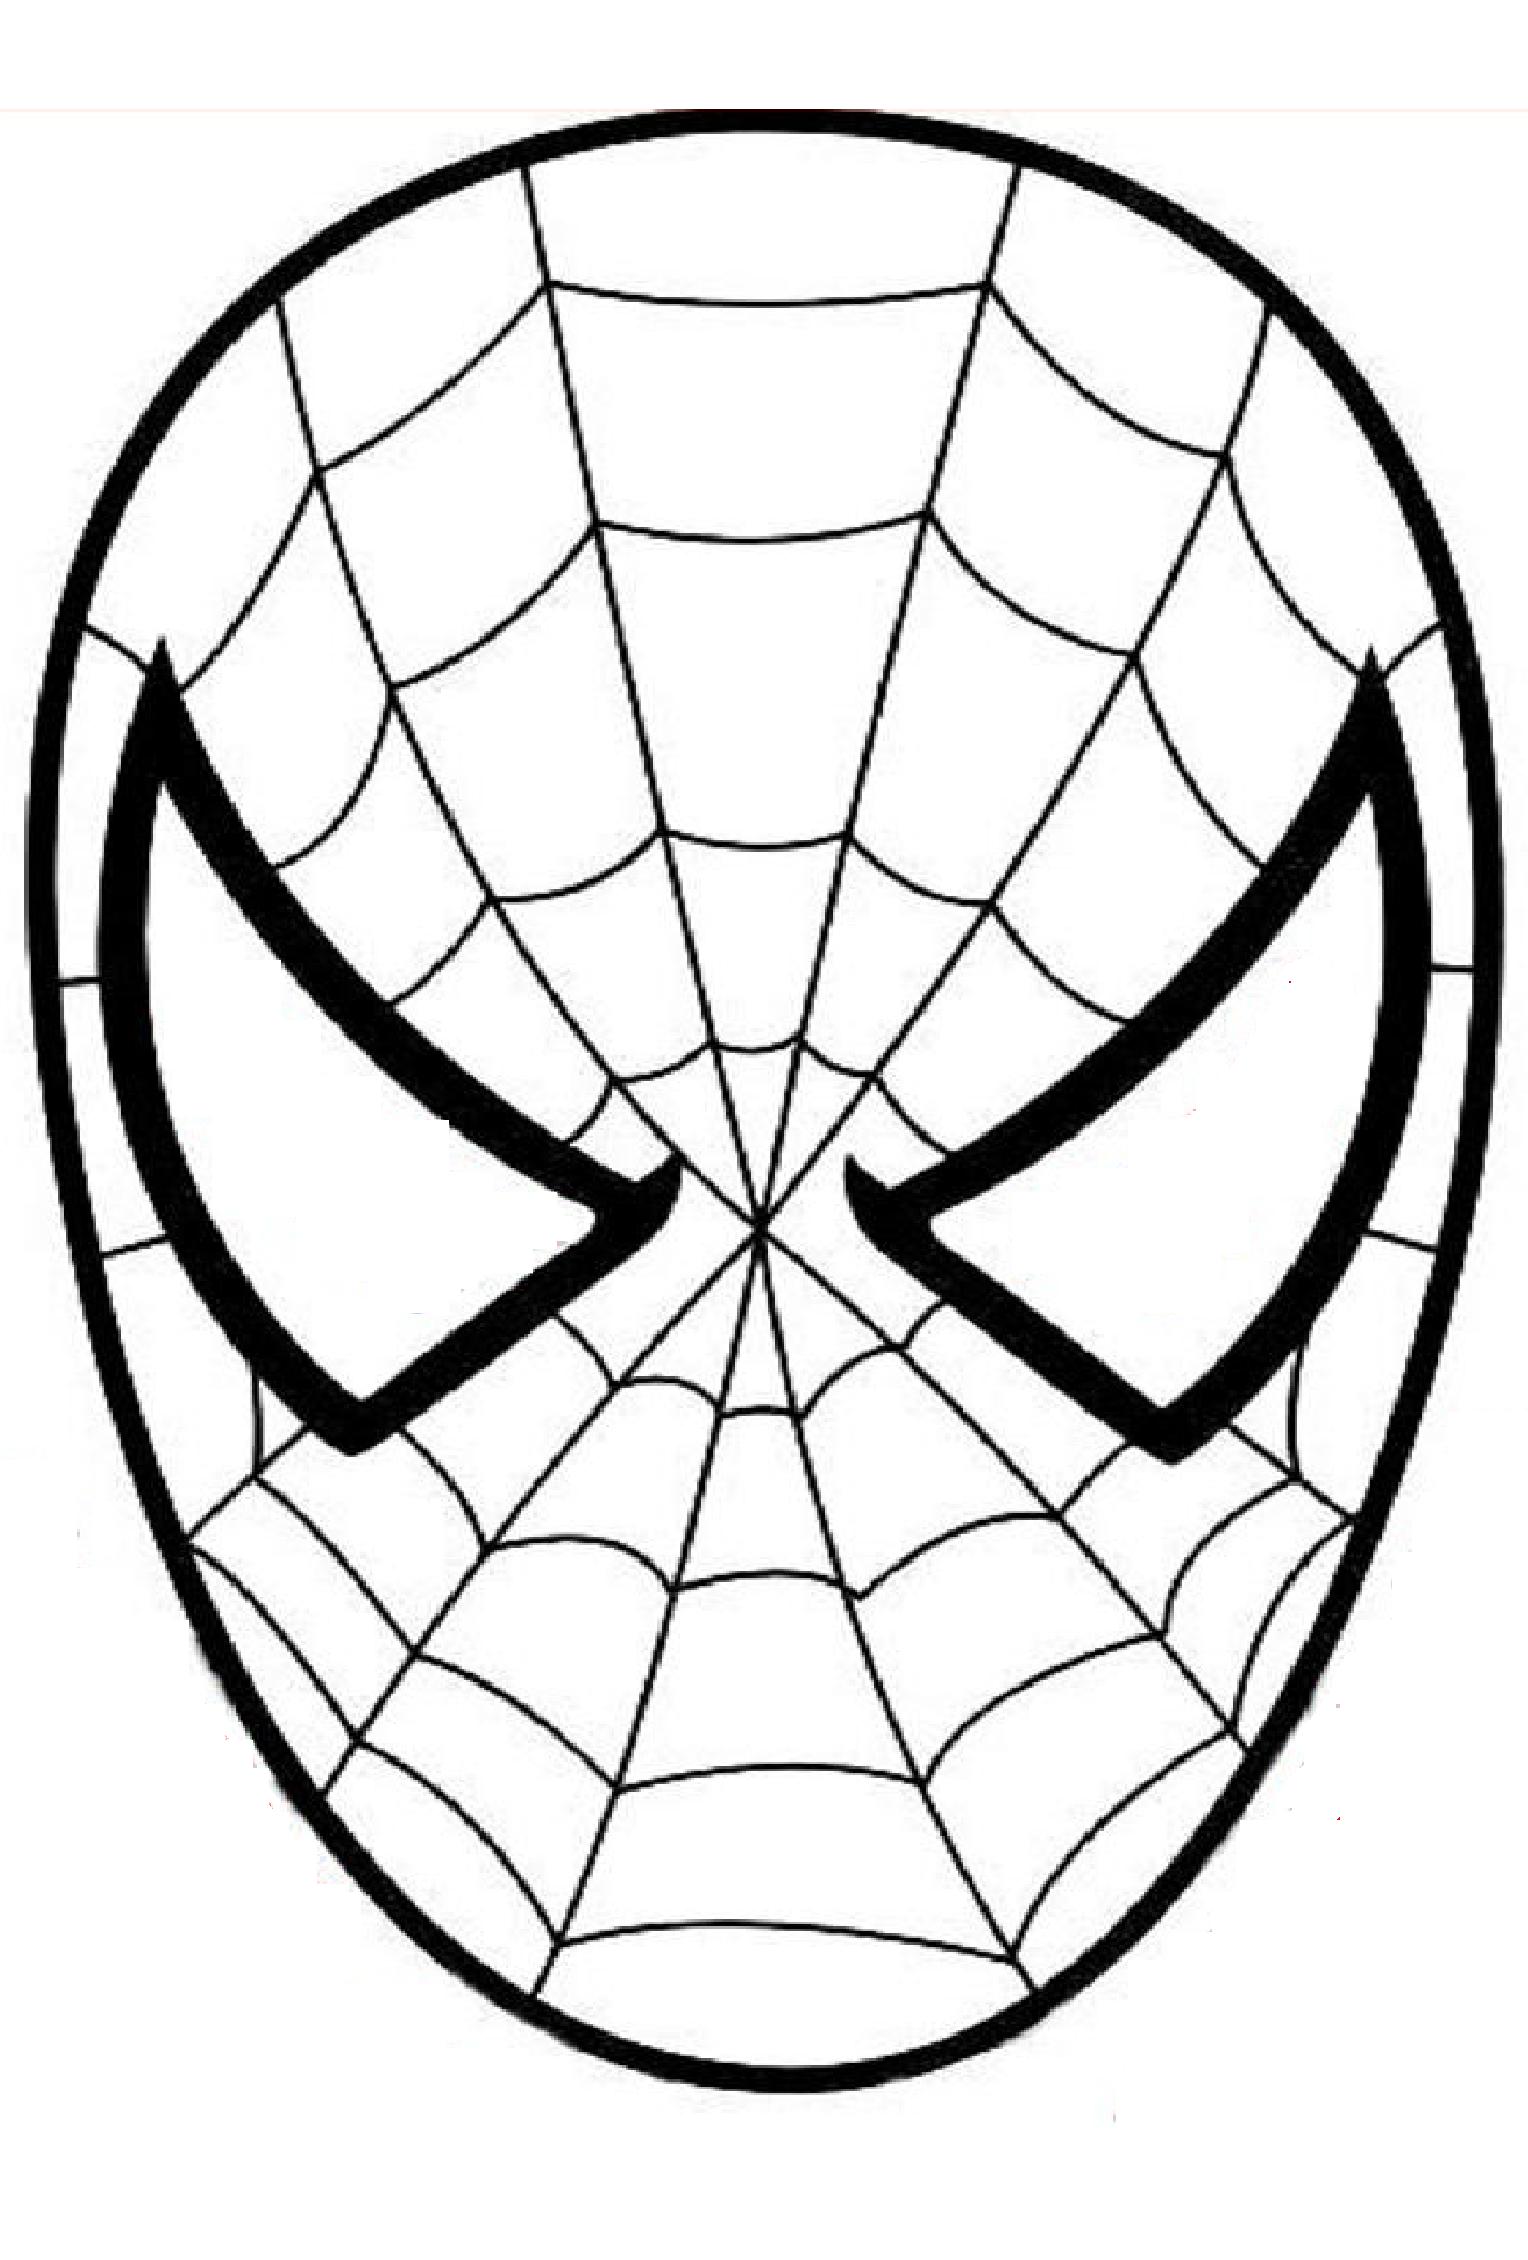 Una máscara de Spiderman para imprimir, decorar y colorear